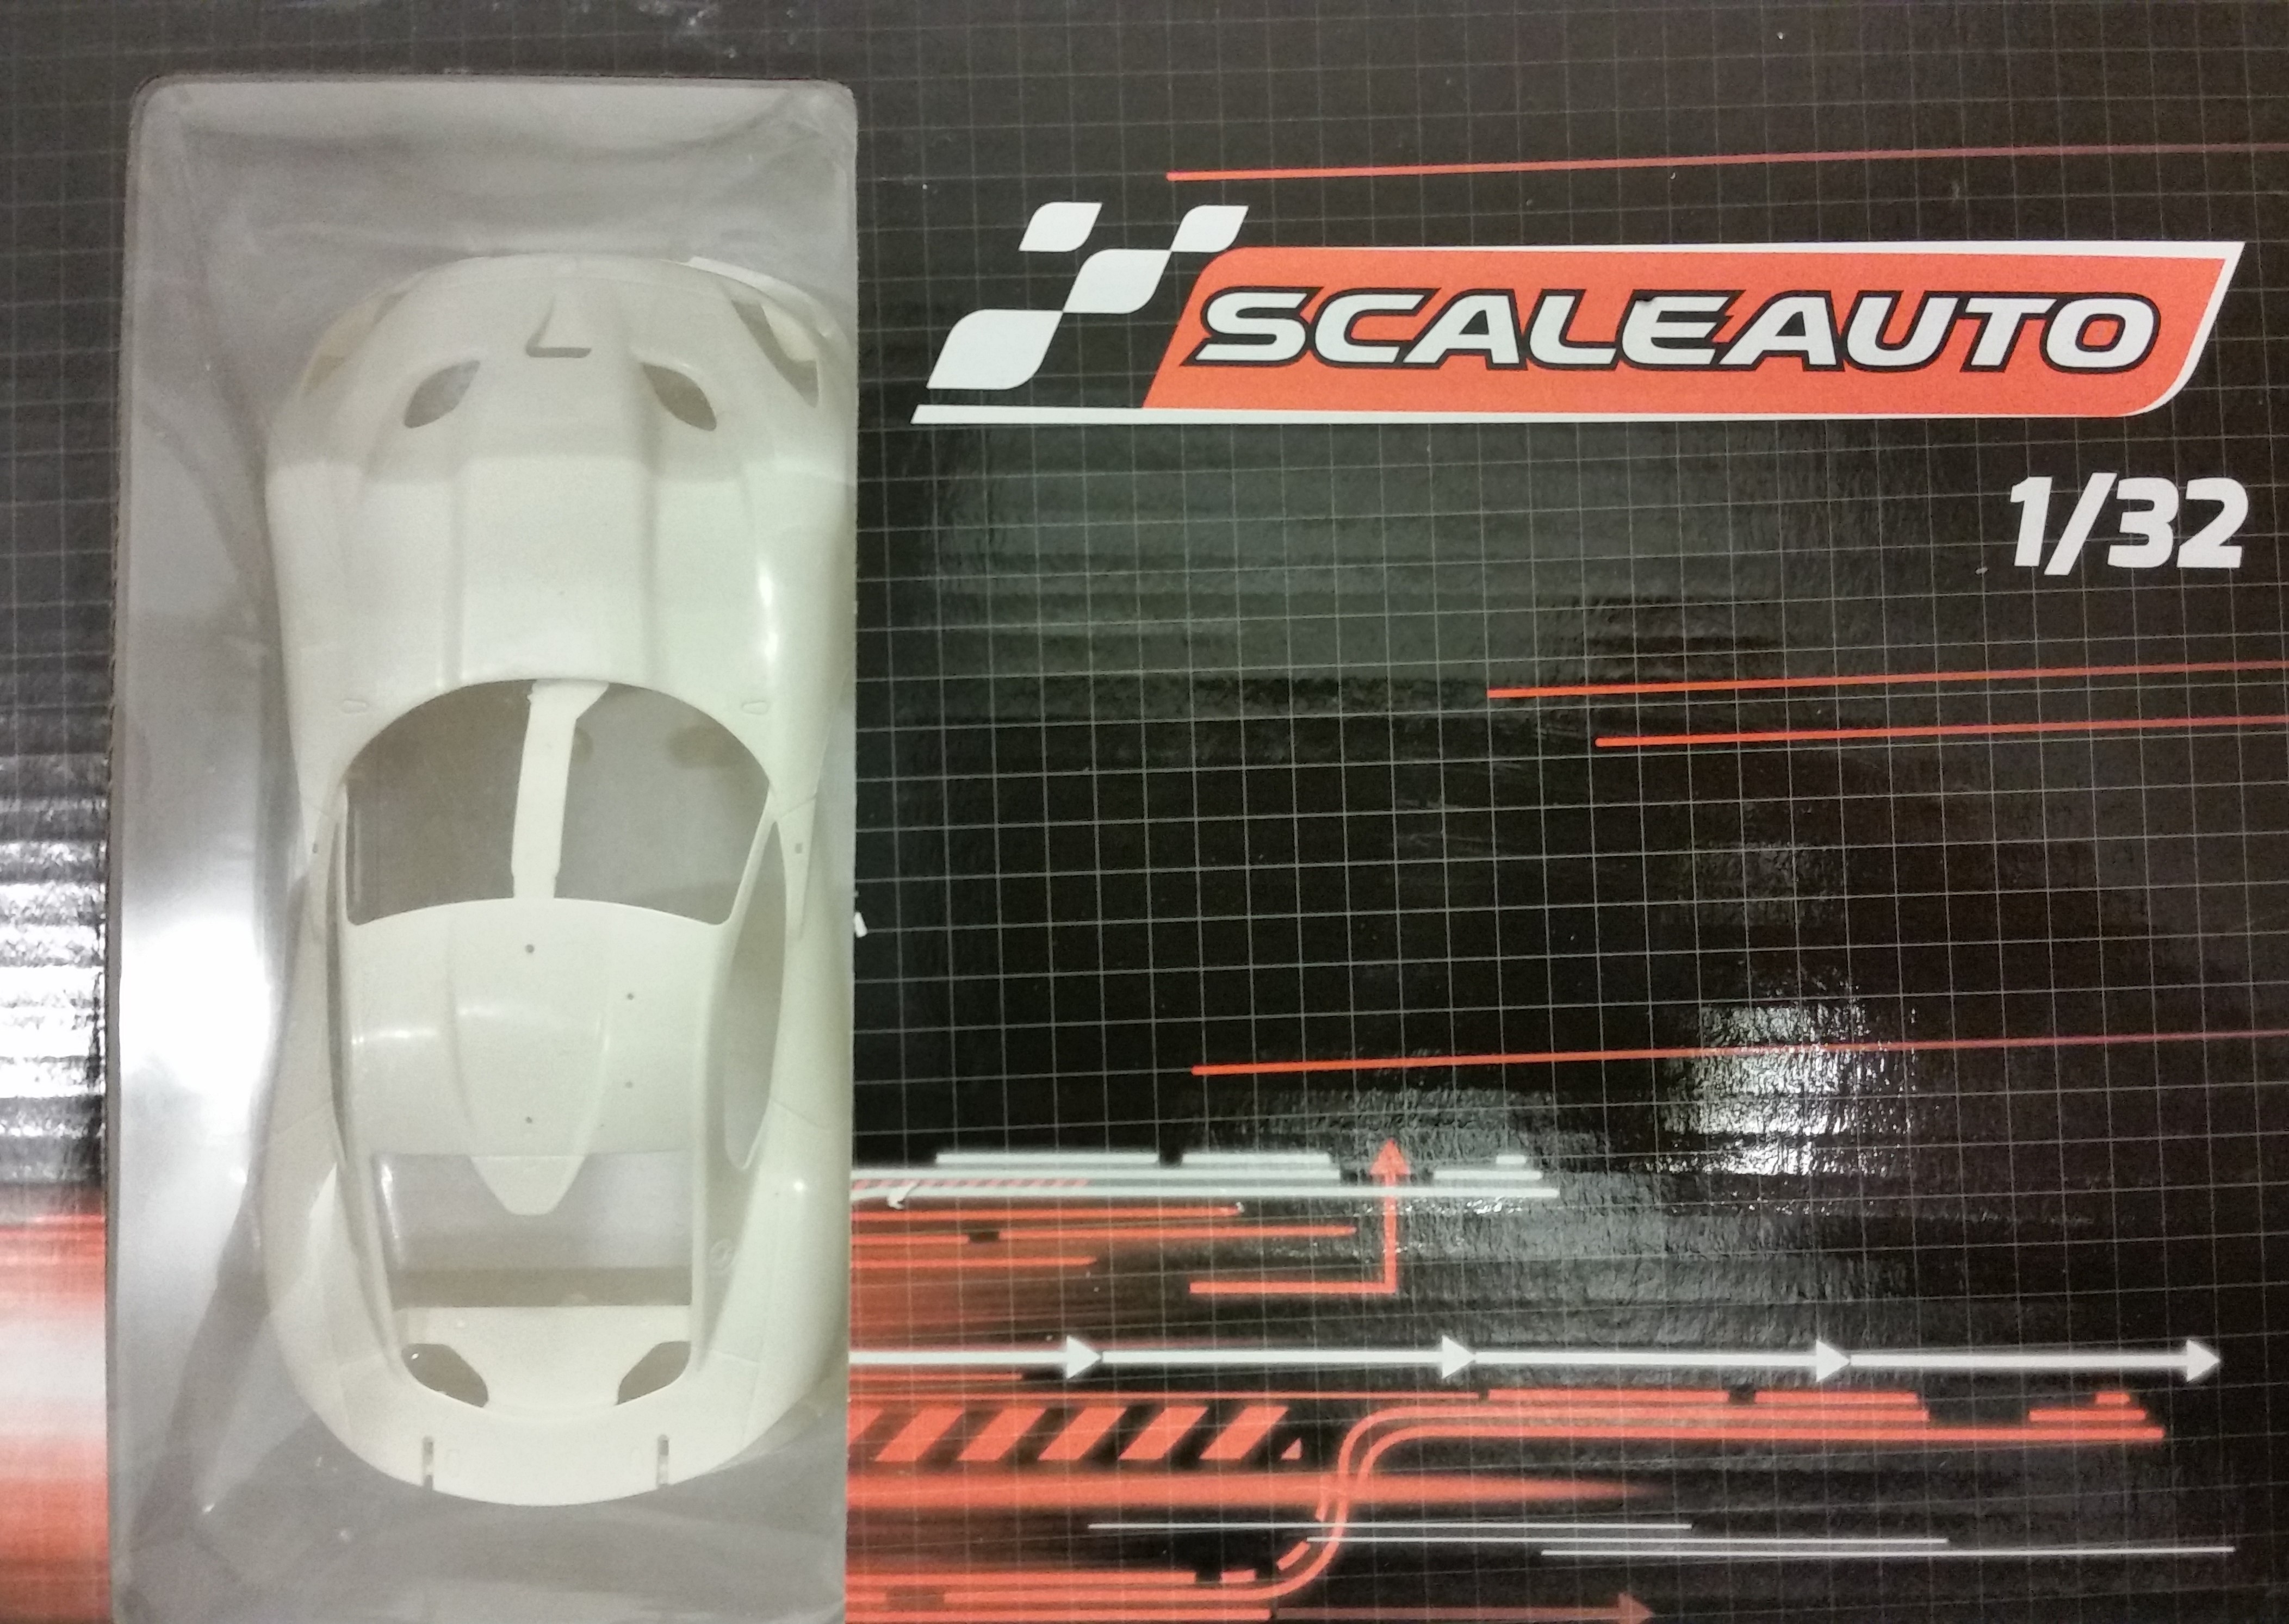 SC-3610 Scaleauto 1:32 scale Viper white body kit